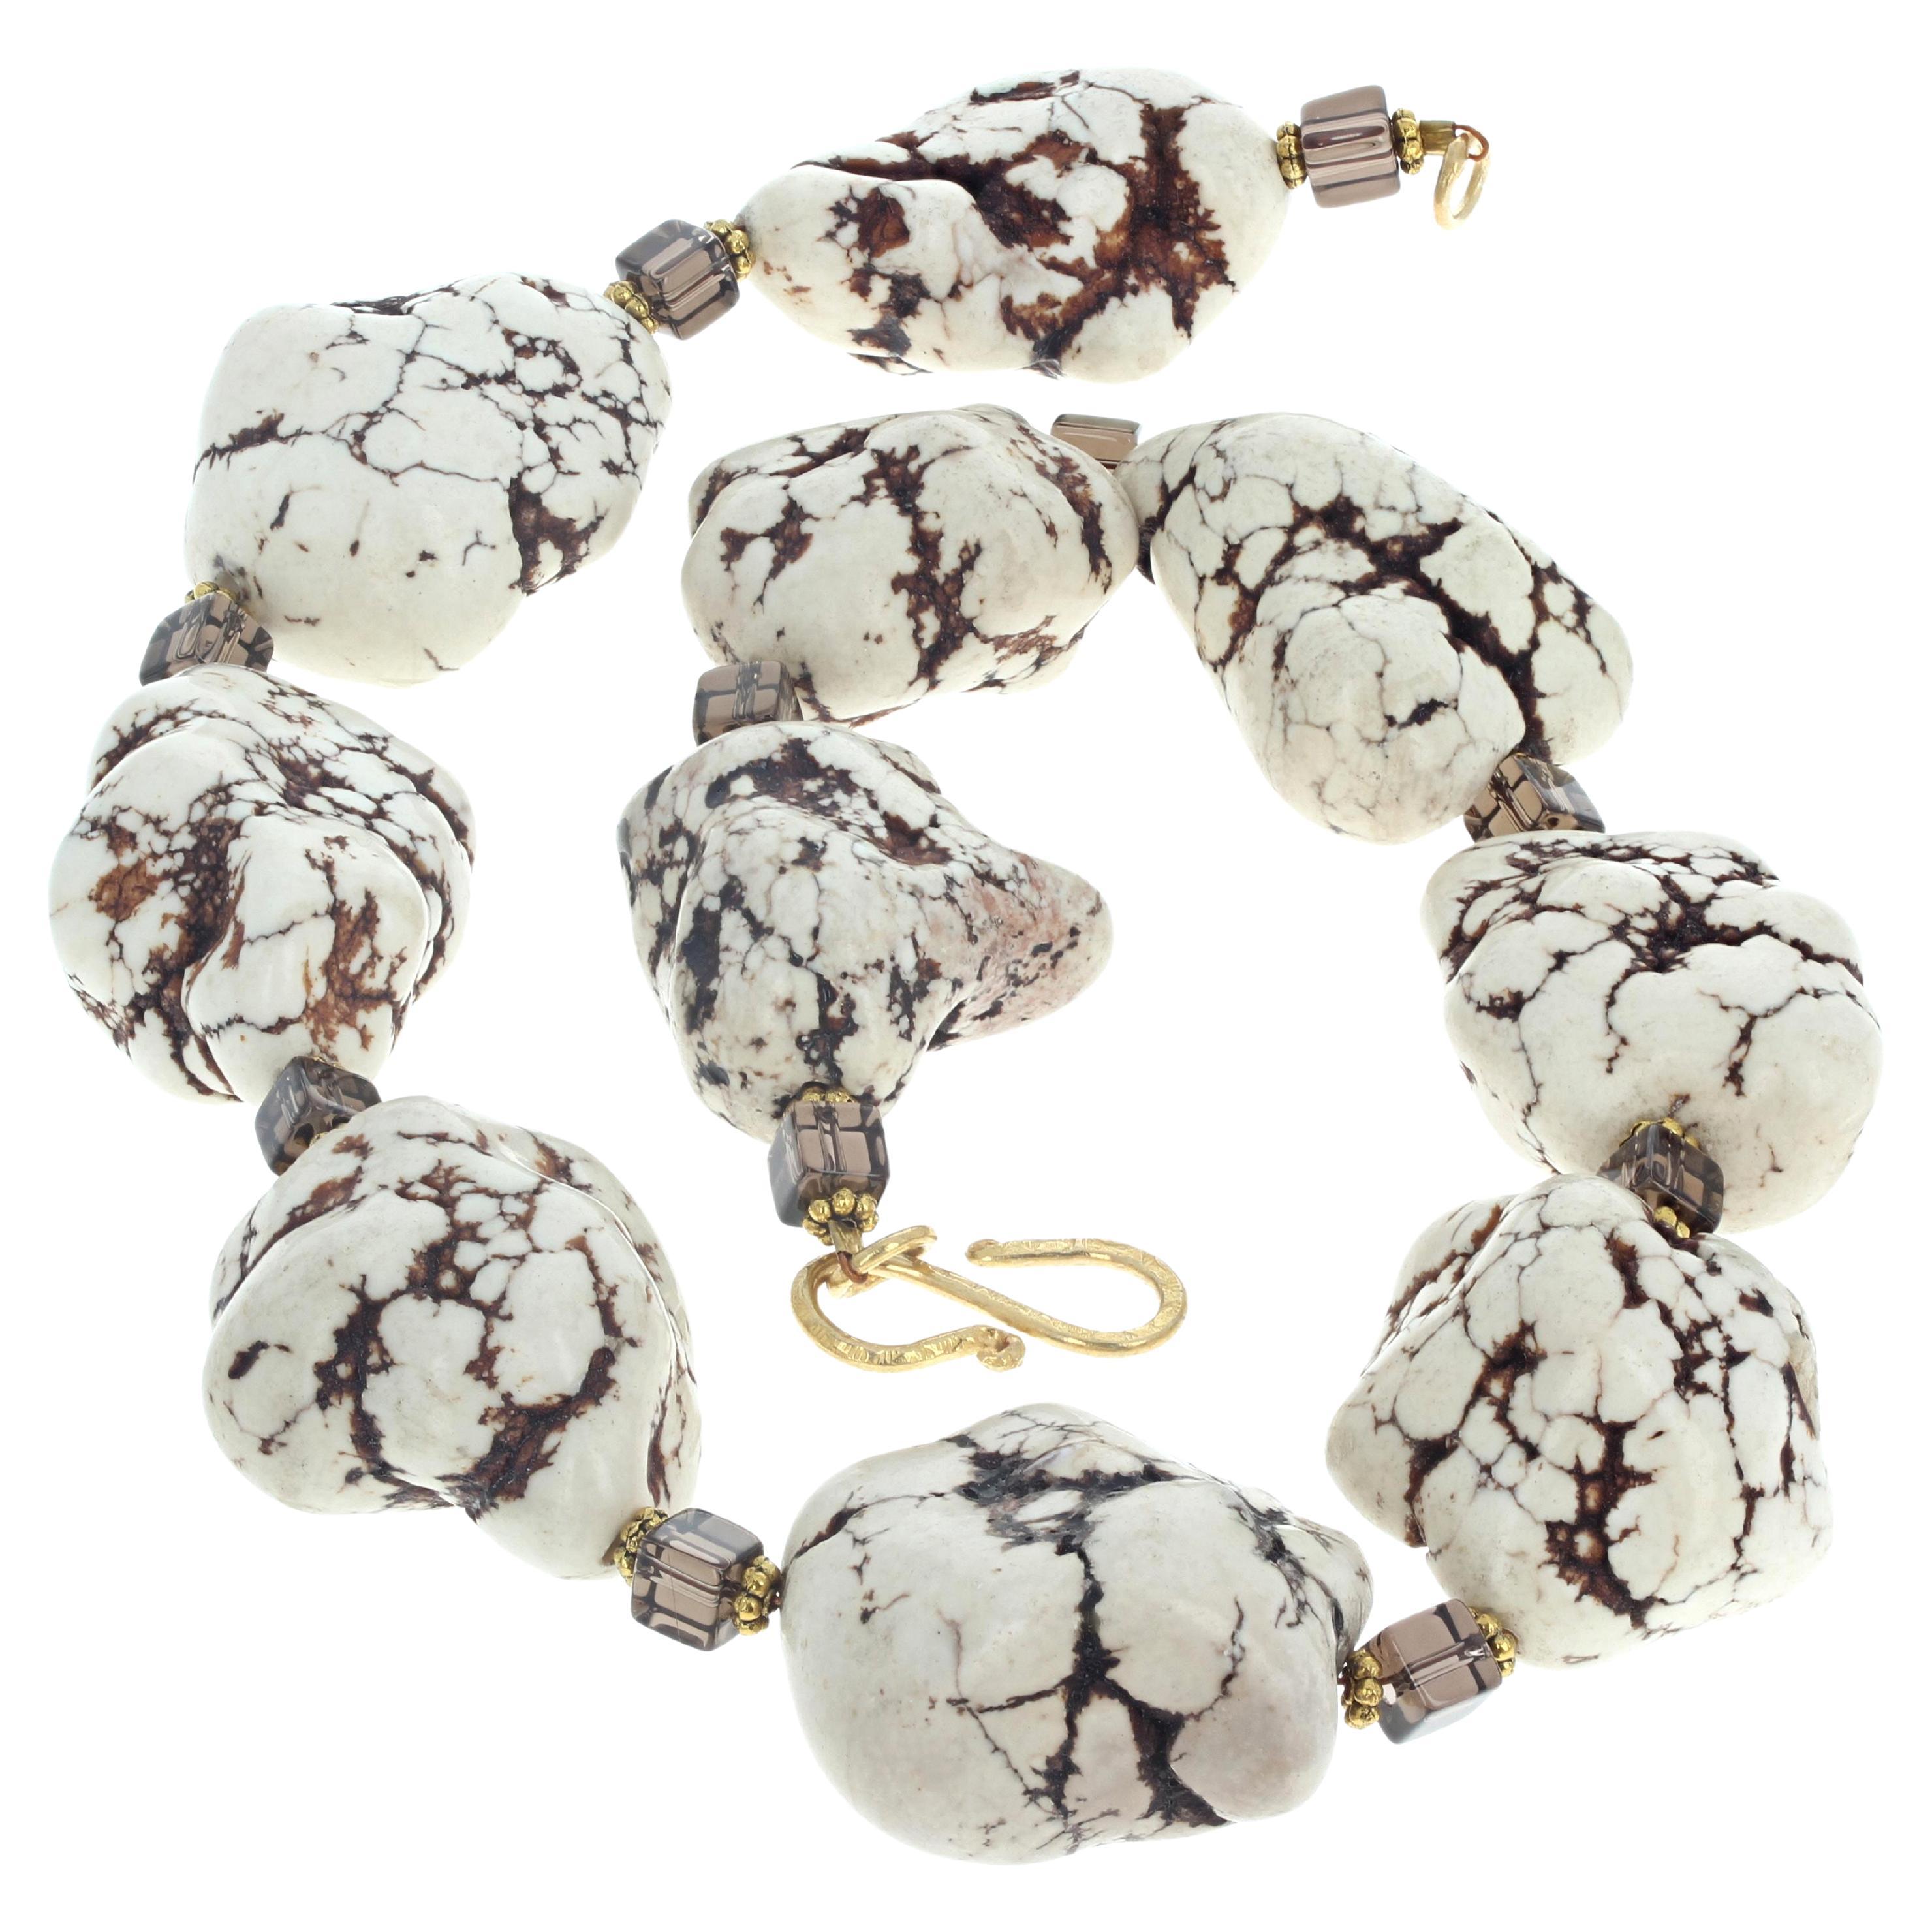 Bekannt als Howlite Crystal Beads - Creamy White Brown Vein Beads - diese sind poliert, so dass sie bequem und künstlerisch um Ihren Hals in diesem 19 Zoll lange Halskette mit großen Edelstein geschliffen Rechtecke der natürlichen Rauchquarz